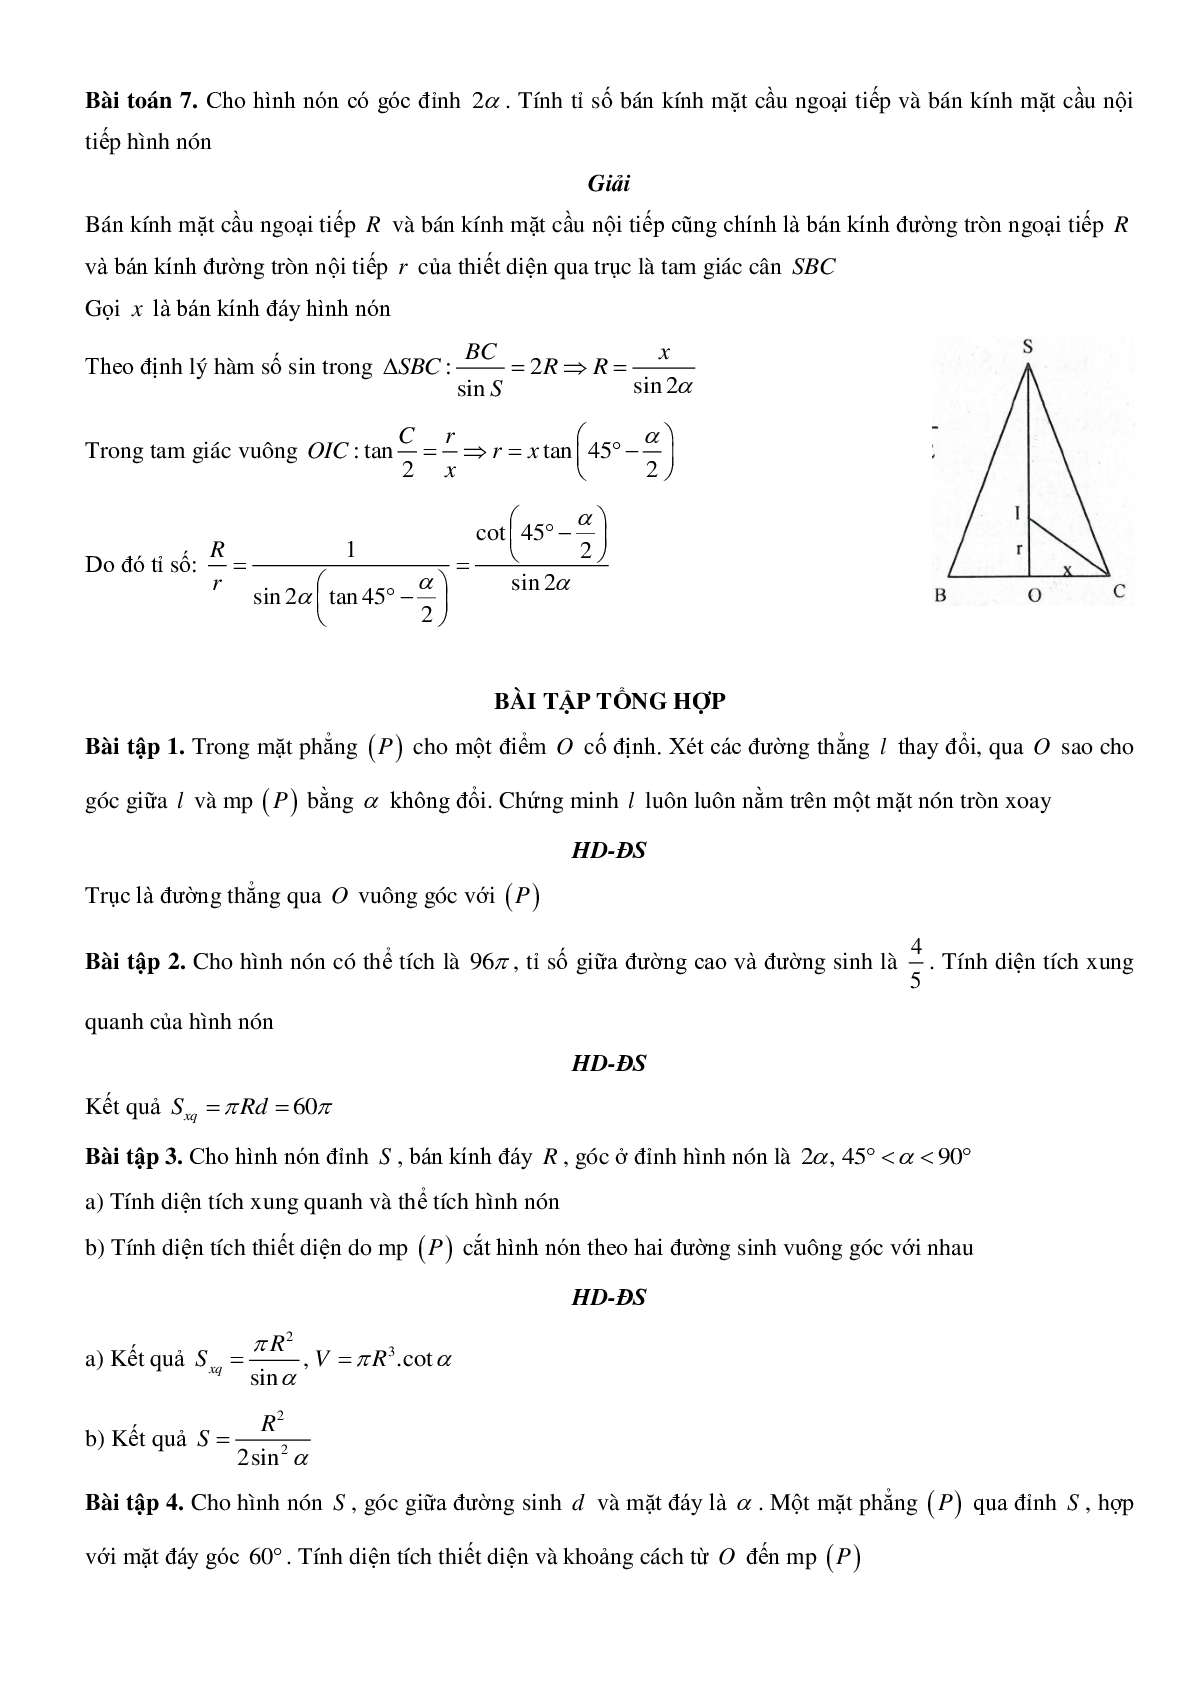 Mặt nón - Hình nón - Khối nón - Ôn thi THPT QG môn toán (trang 10)